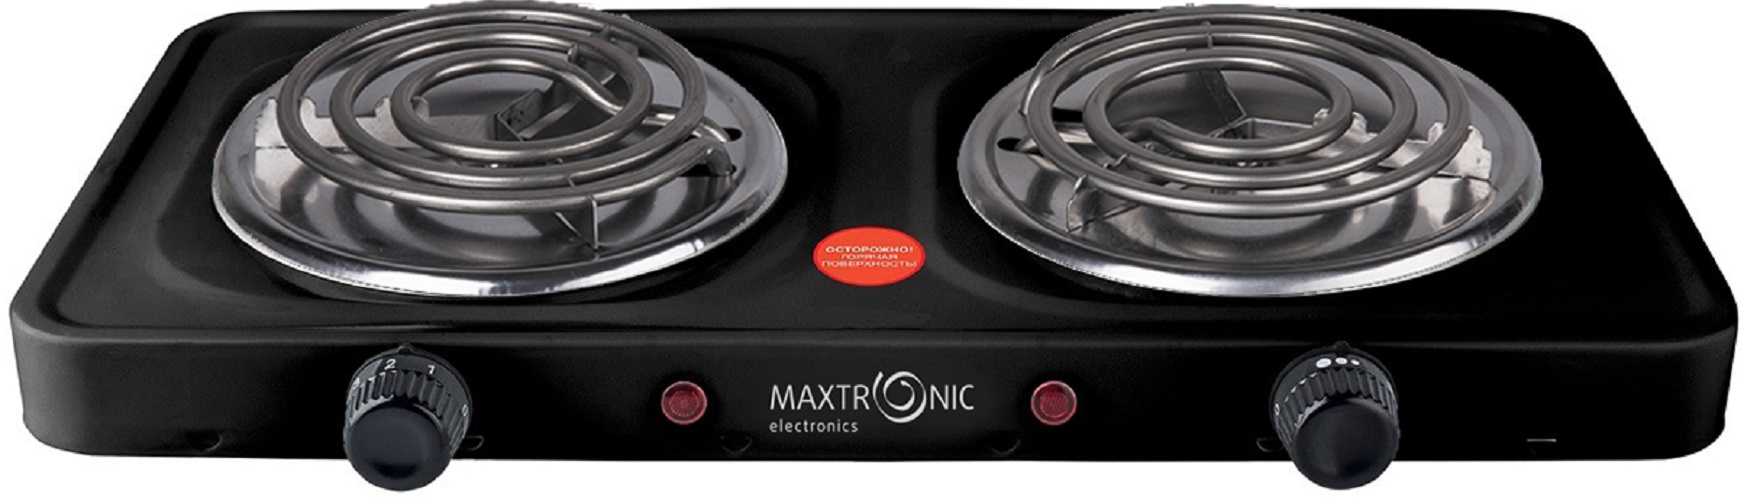 Настольная электрическая плитка MAXTRONIC MAX-AT-002BS черный чайник электрический maxtronic max 503 1 5 л белый серебристый